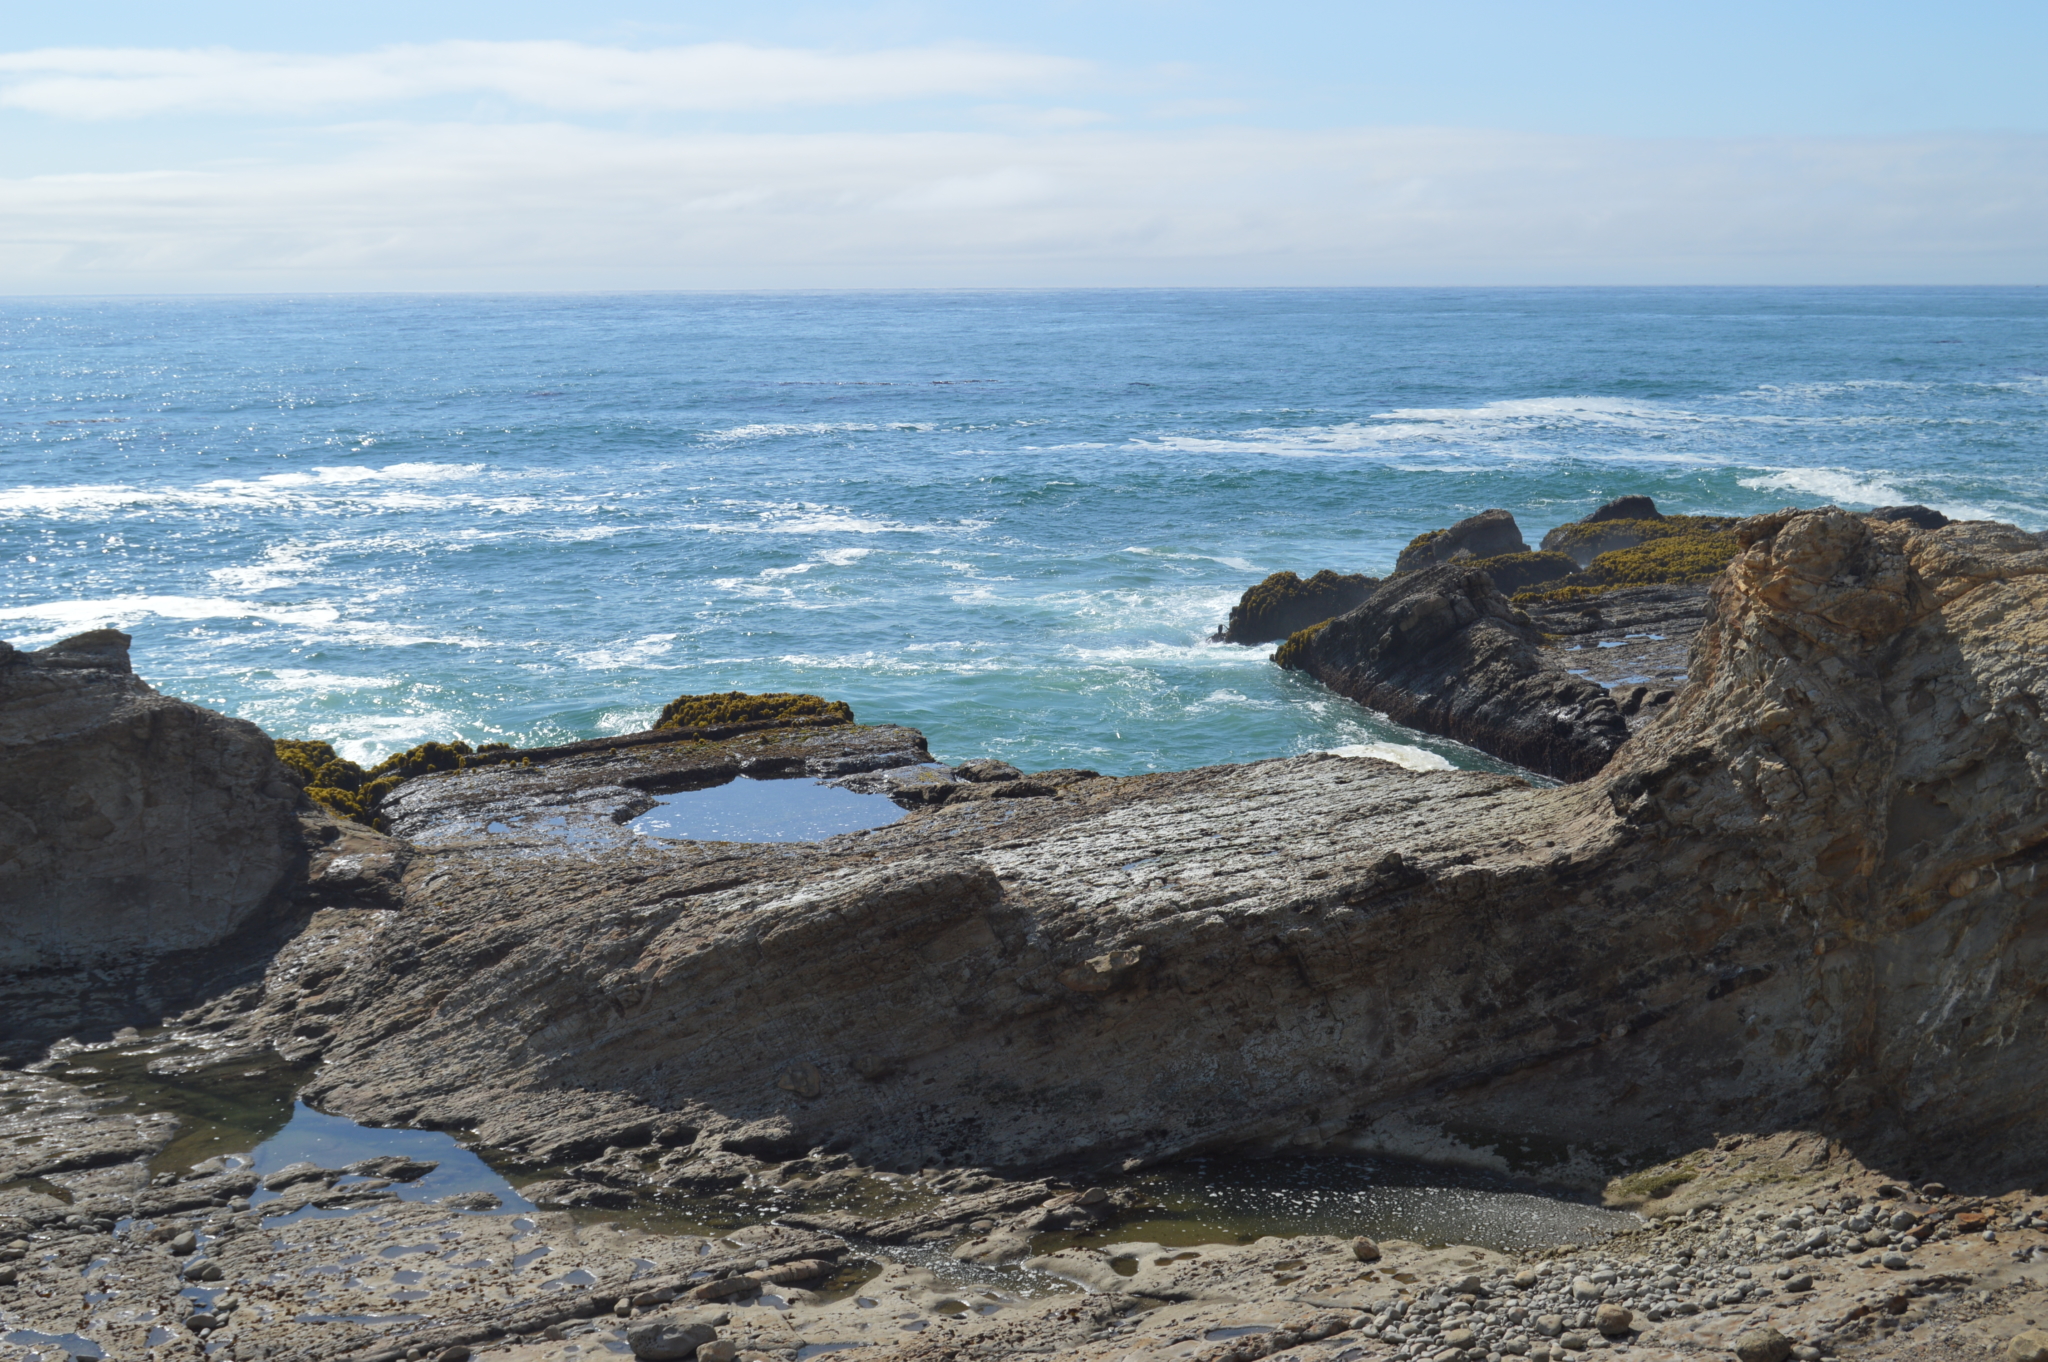 Outcropping rocks on the ocean shoreline of California